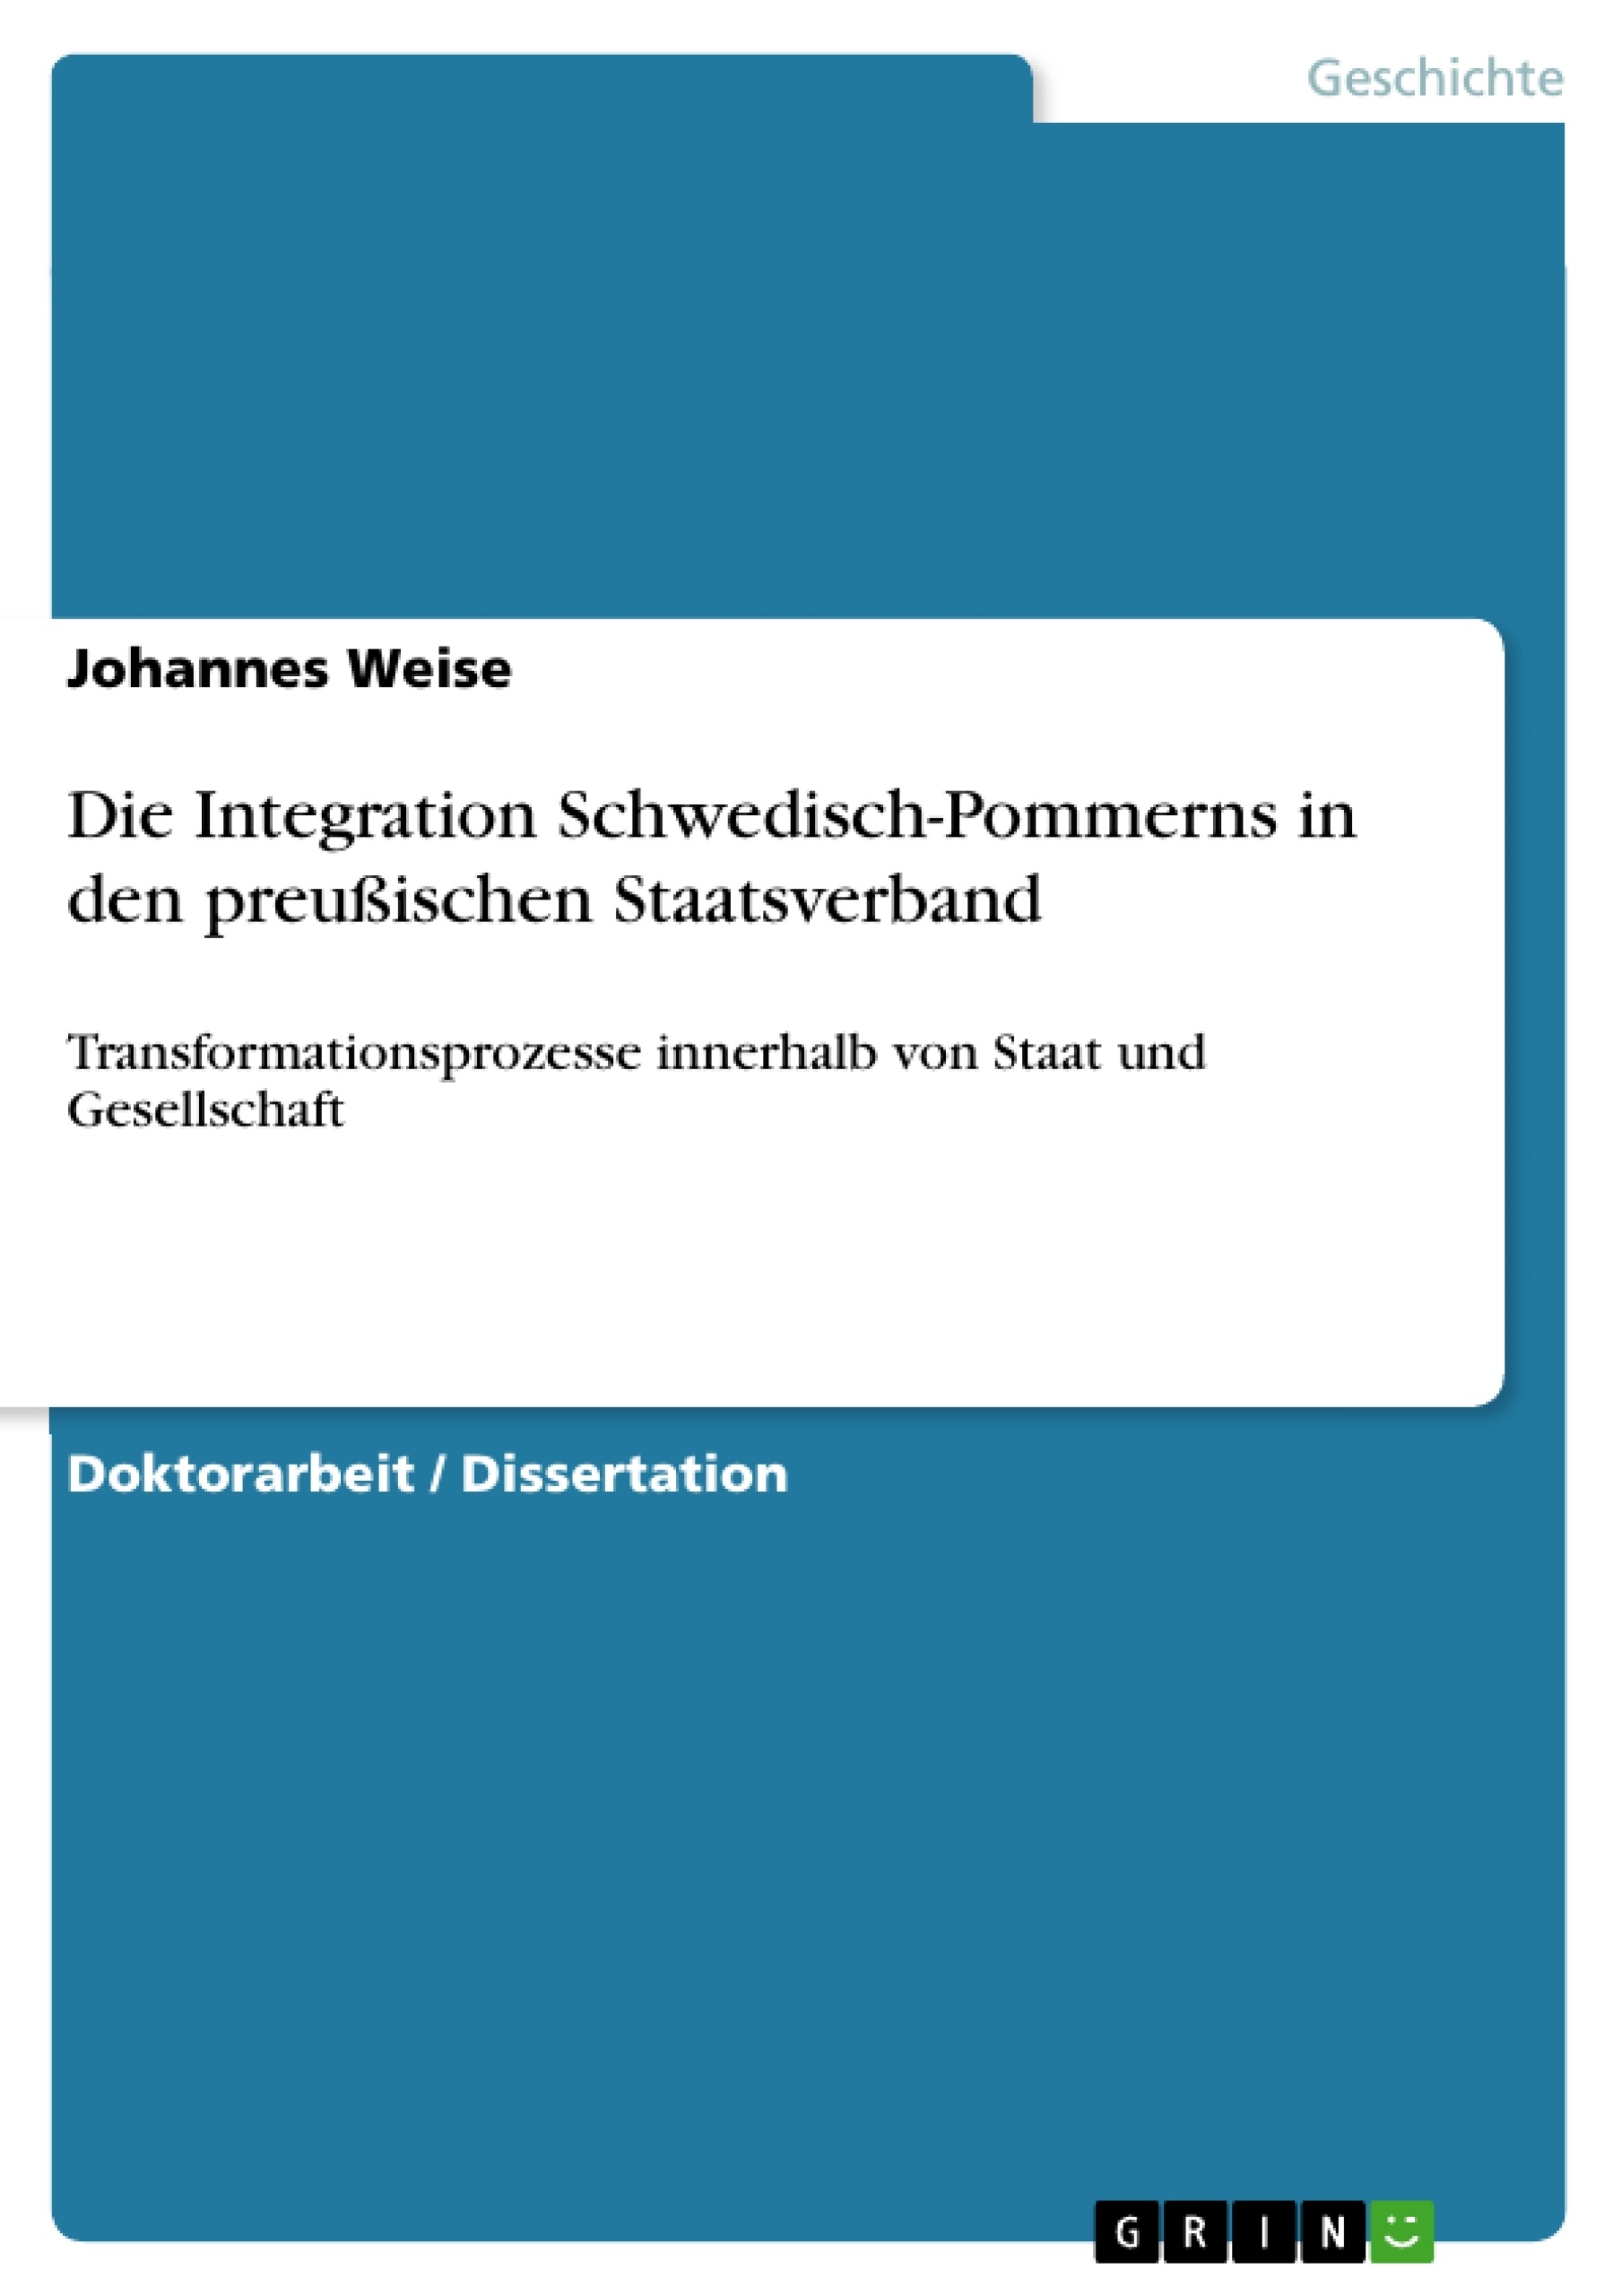 Title: Die Integration Schwedisch-Pommerns in den preußischen Staatsverband